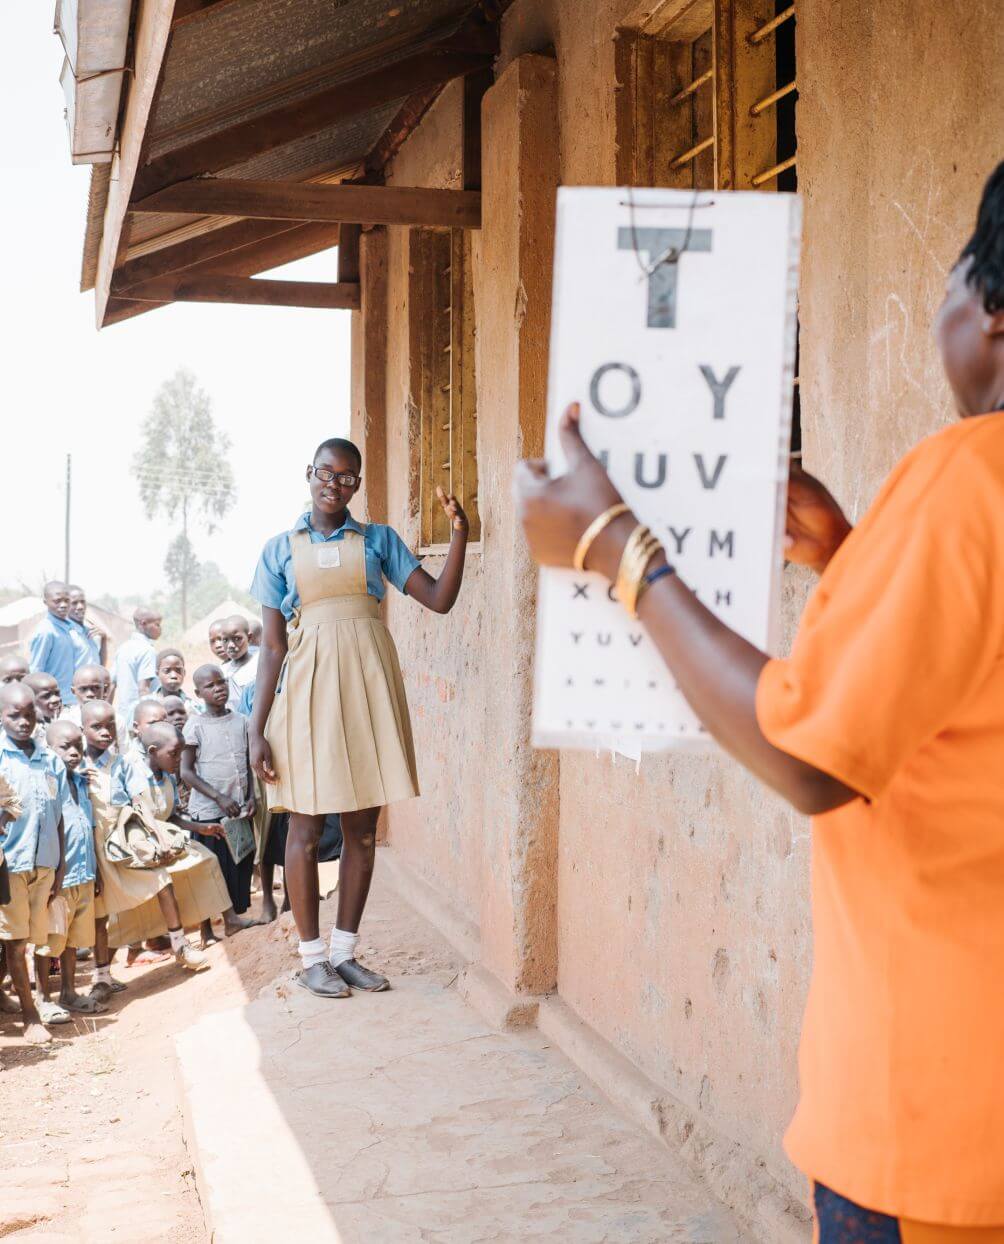 Sehtest an einer Schule in Uganda. Eine Frau in einem orangen T-Shirt hält eine Tafel hoch, auf der Buchstaben in unterschiedlichen Größen zu sehen sind. Eine Schülerin, die etwas entfernt davon steht, liest die Buchstaben vor.